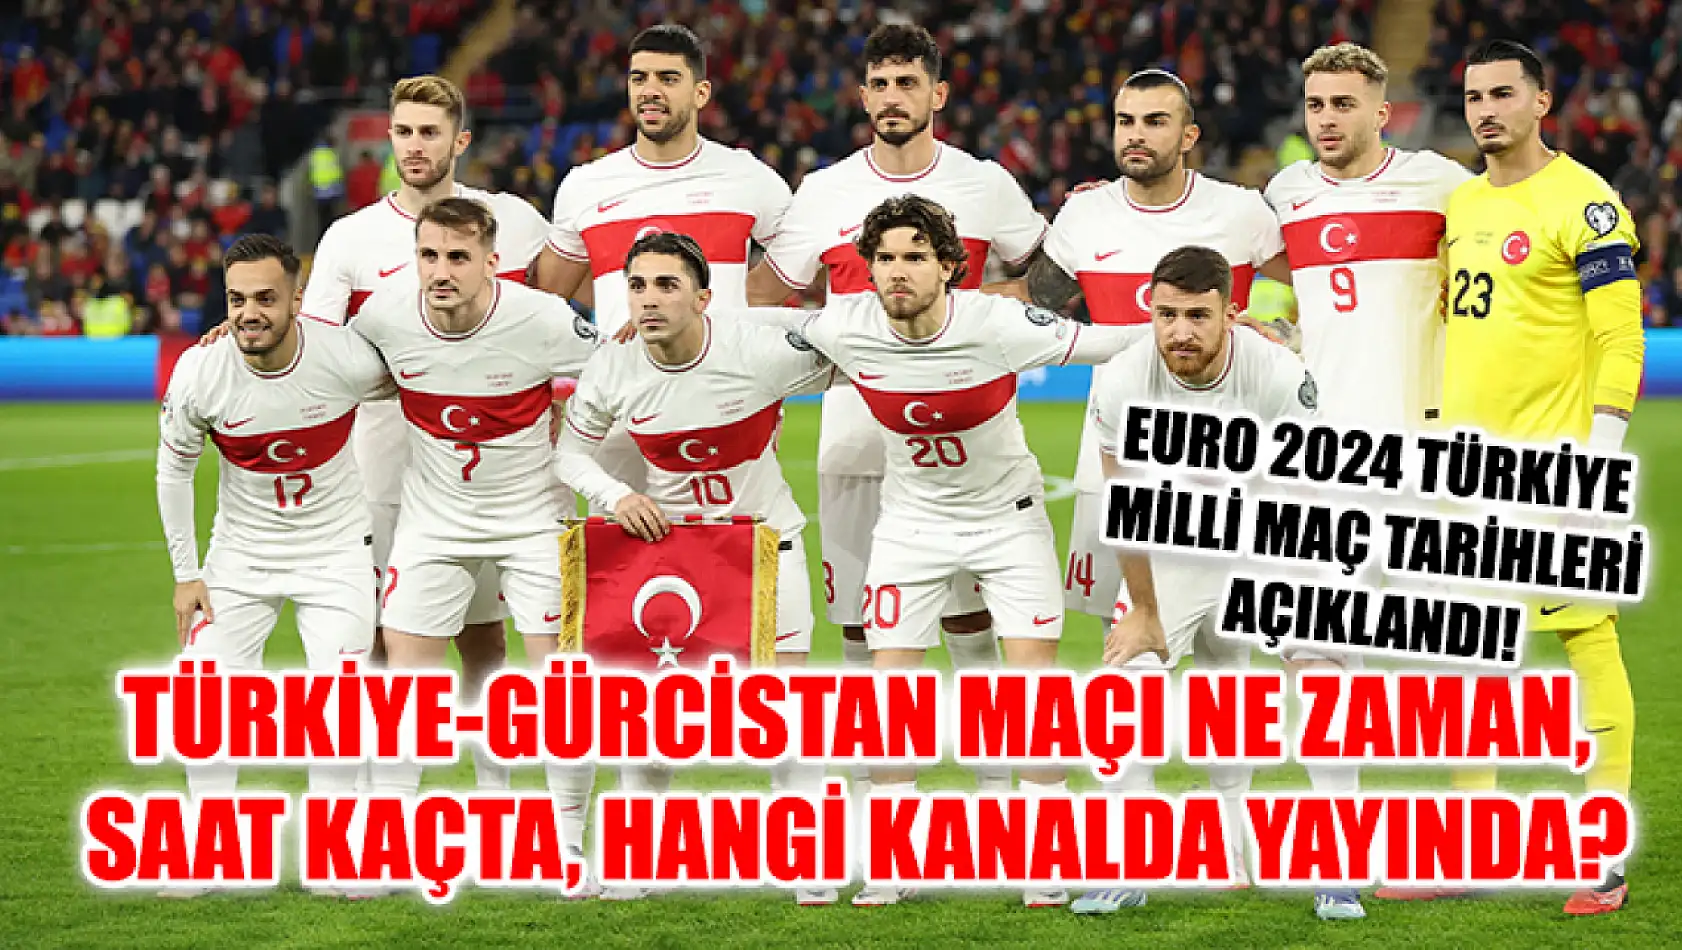 Türkiye-Gürcistan maçı ne zaman, saat kaçta, hangi kanalda yayında? EURO 2024 Türkiye milli maç tarihleri açıklandı!